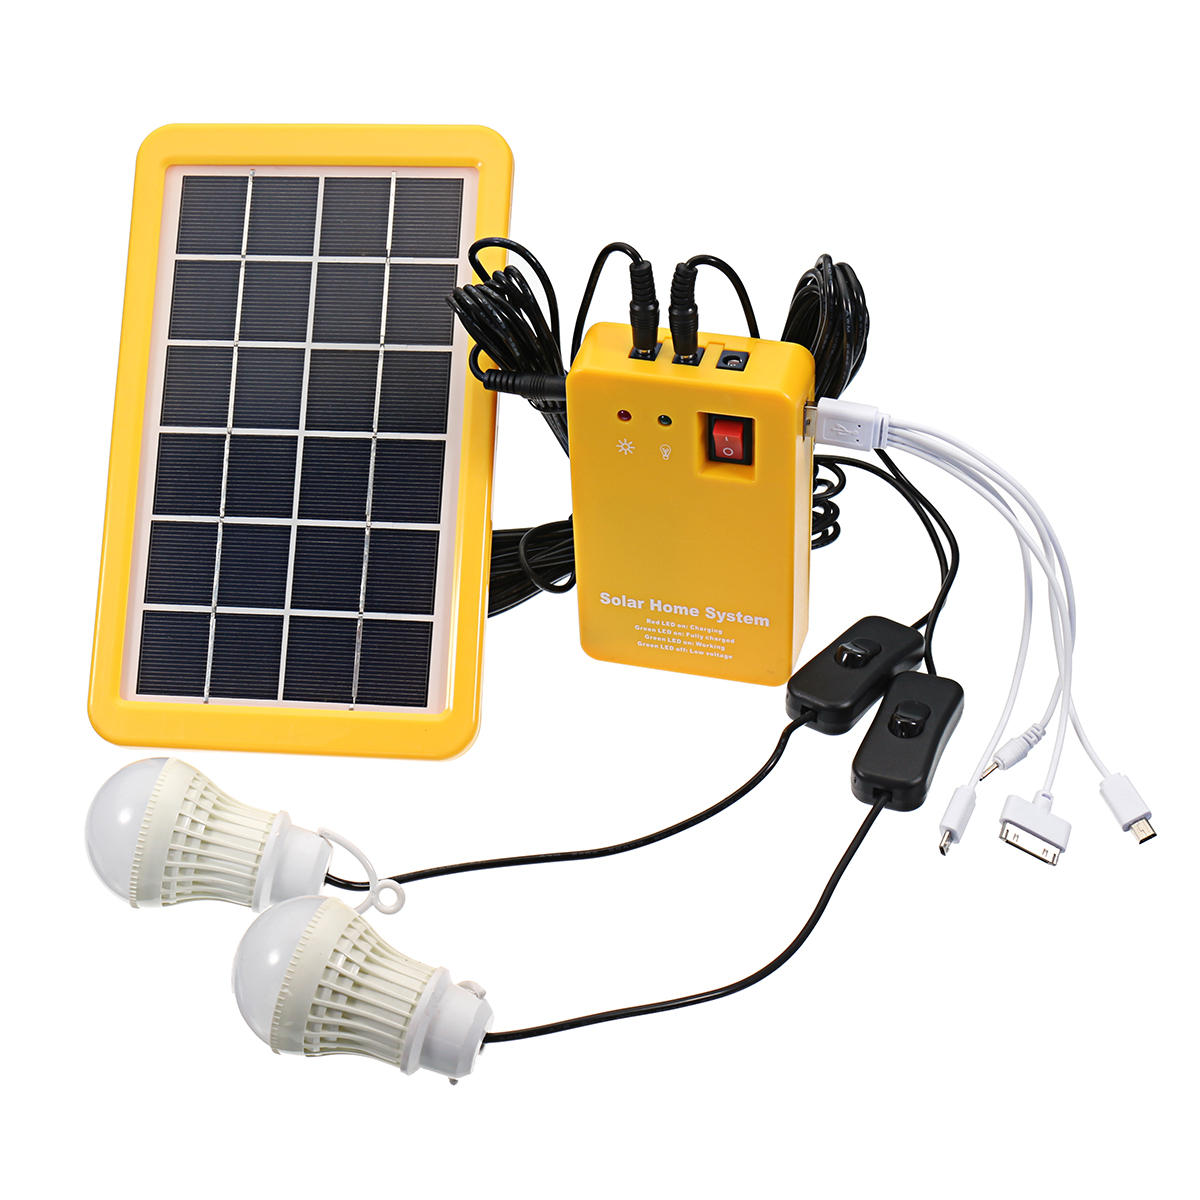 

3 Вт Солнечная Система с питанием Солнечная Генератор для зарядки панели 5V USB-система для выработки электроэнергии с 2